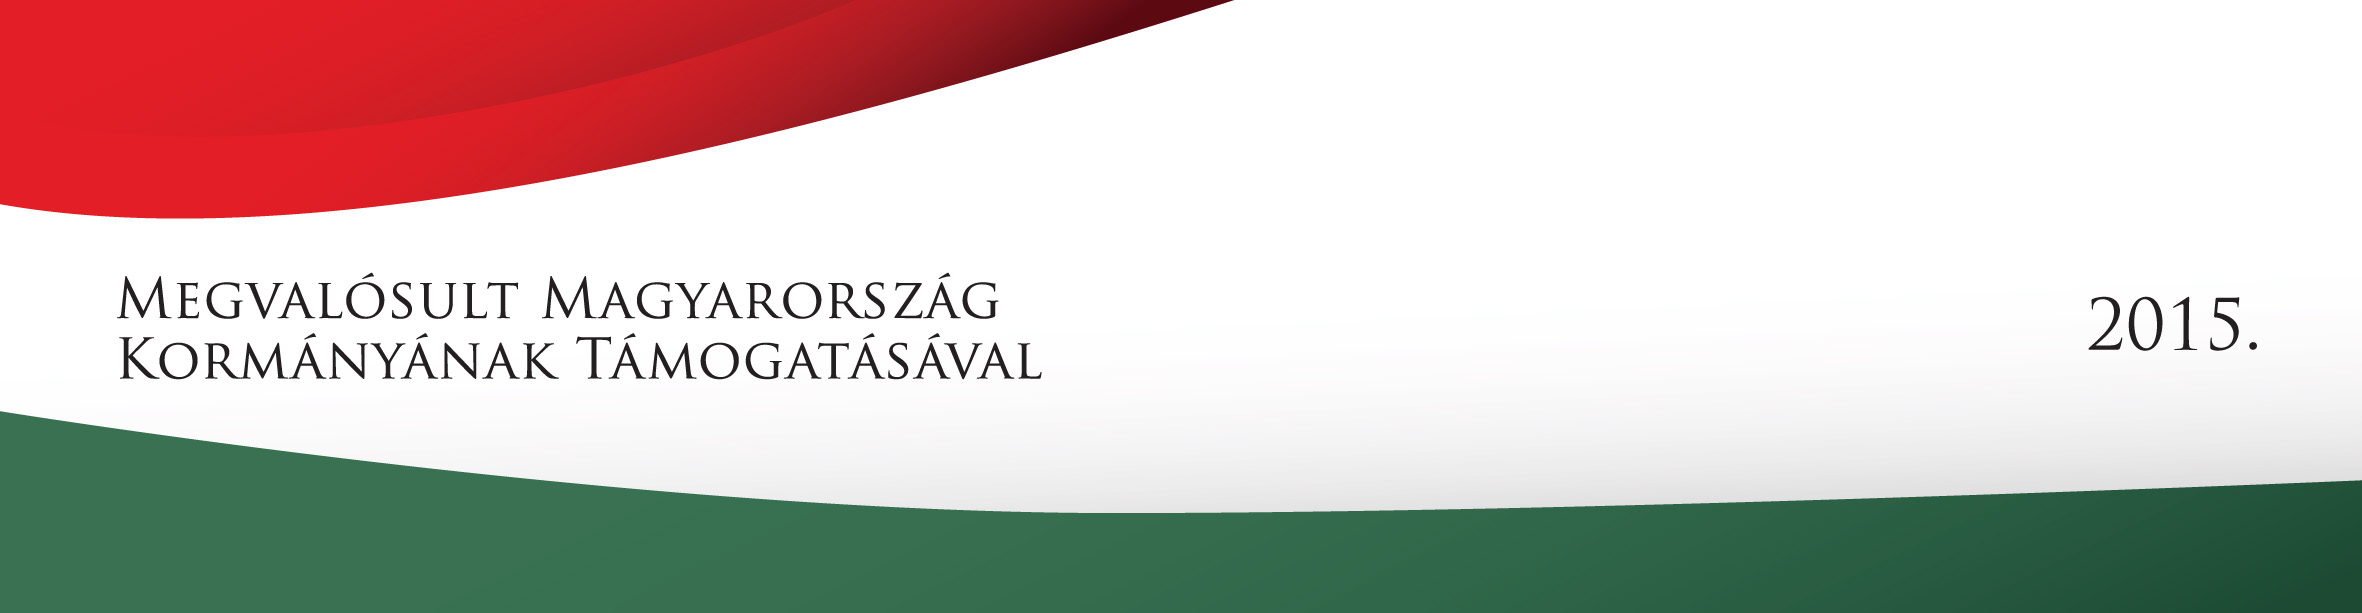 Megvalósult Magyarország Kormányának Támogatásával 2015 logó